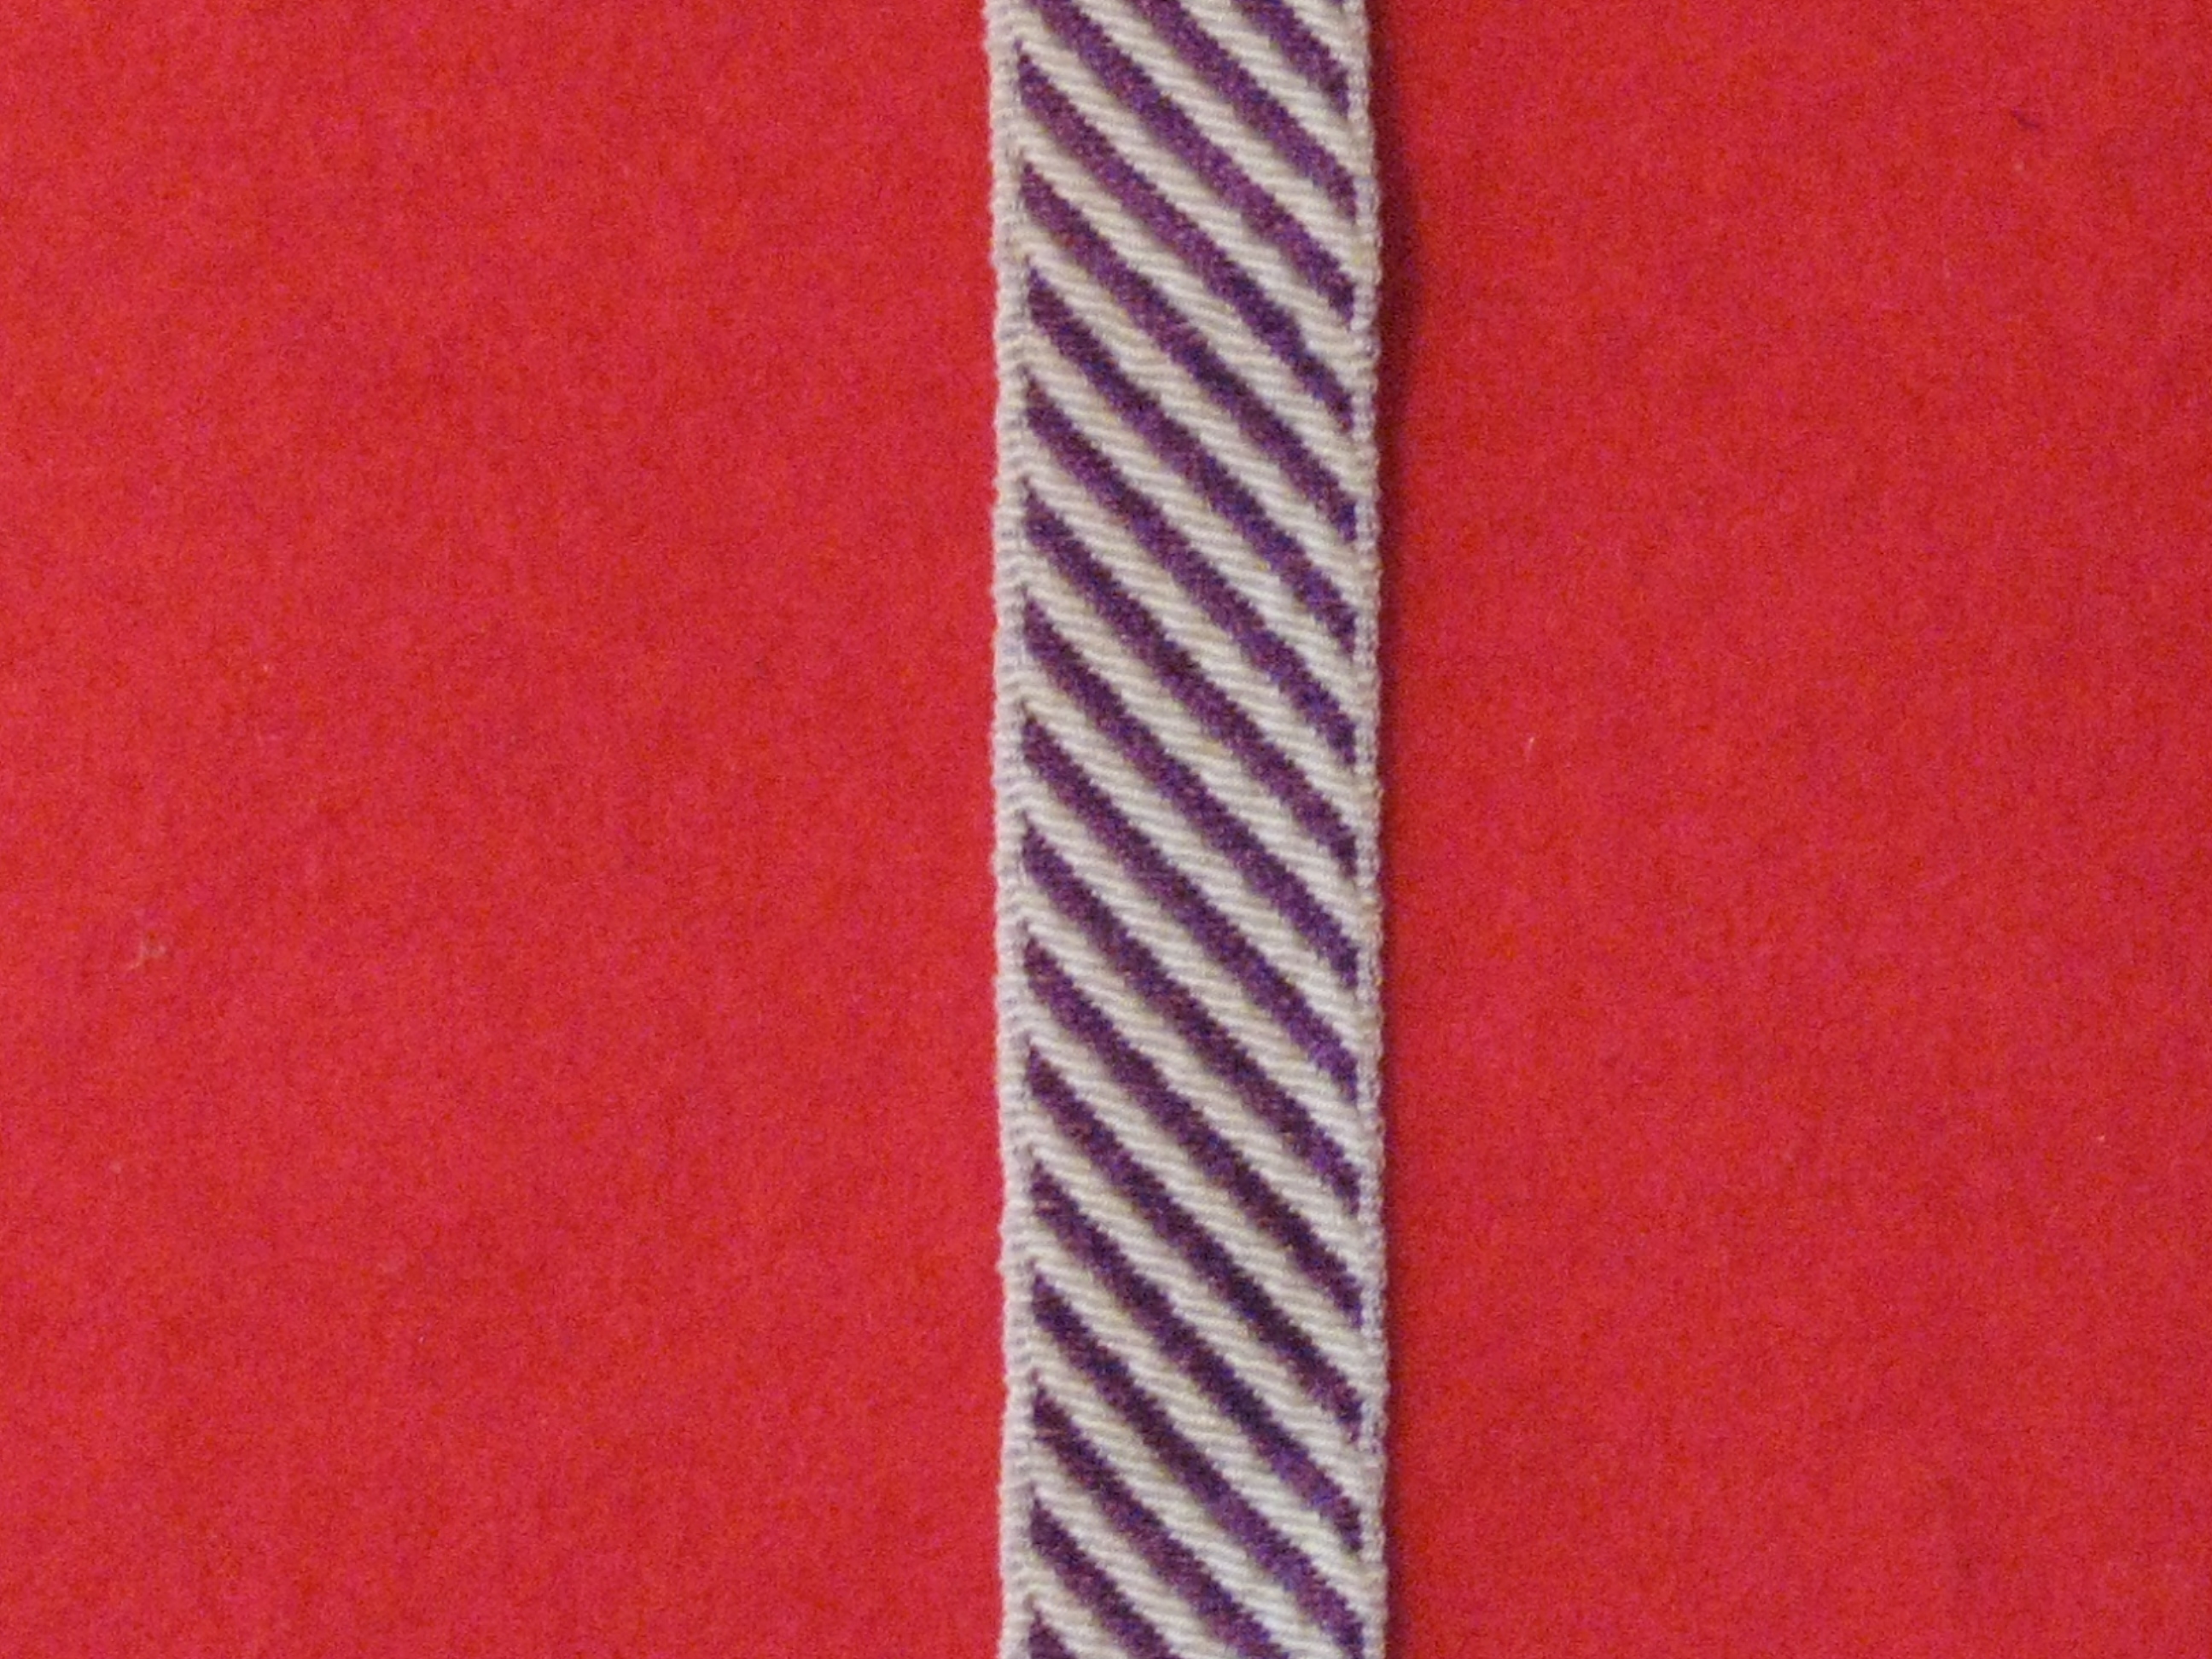 DFC Full size medal ribbon 